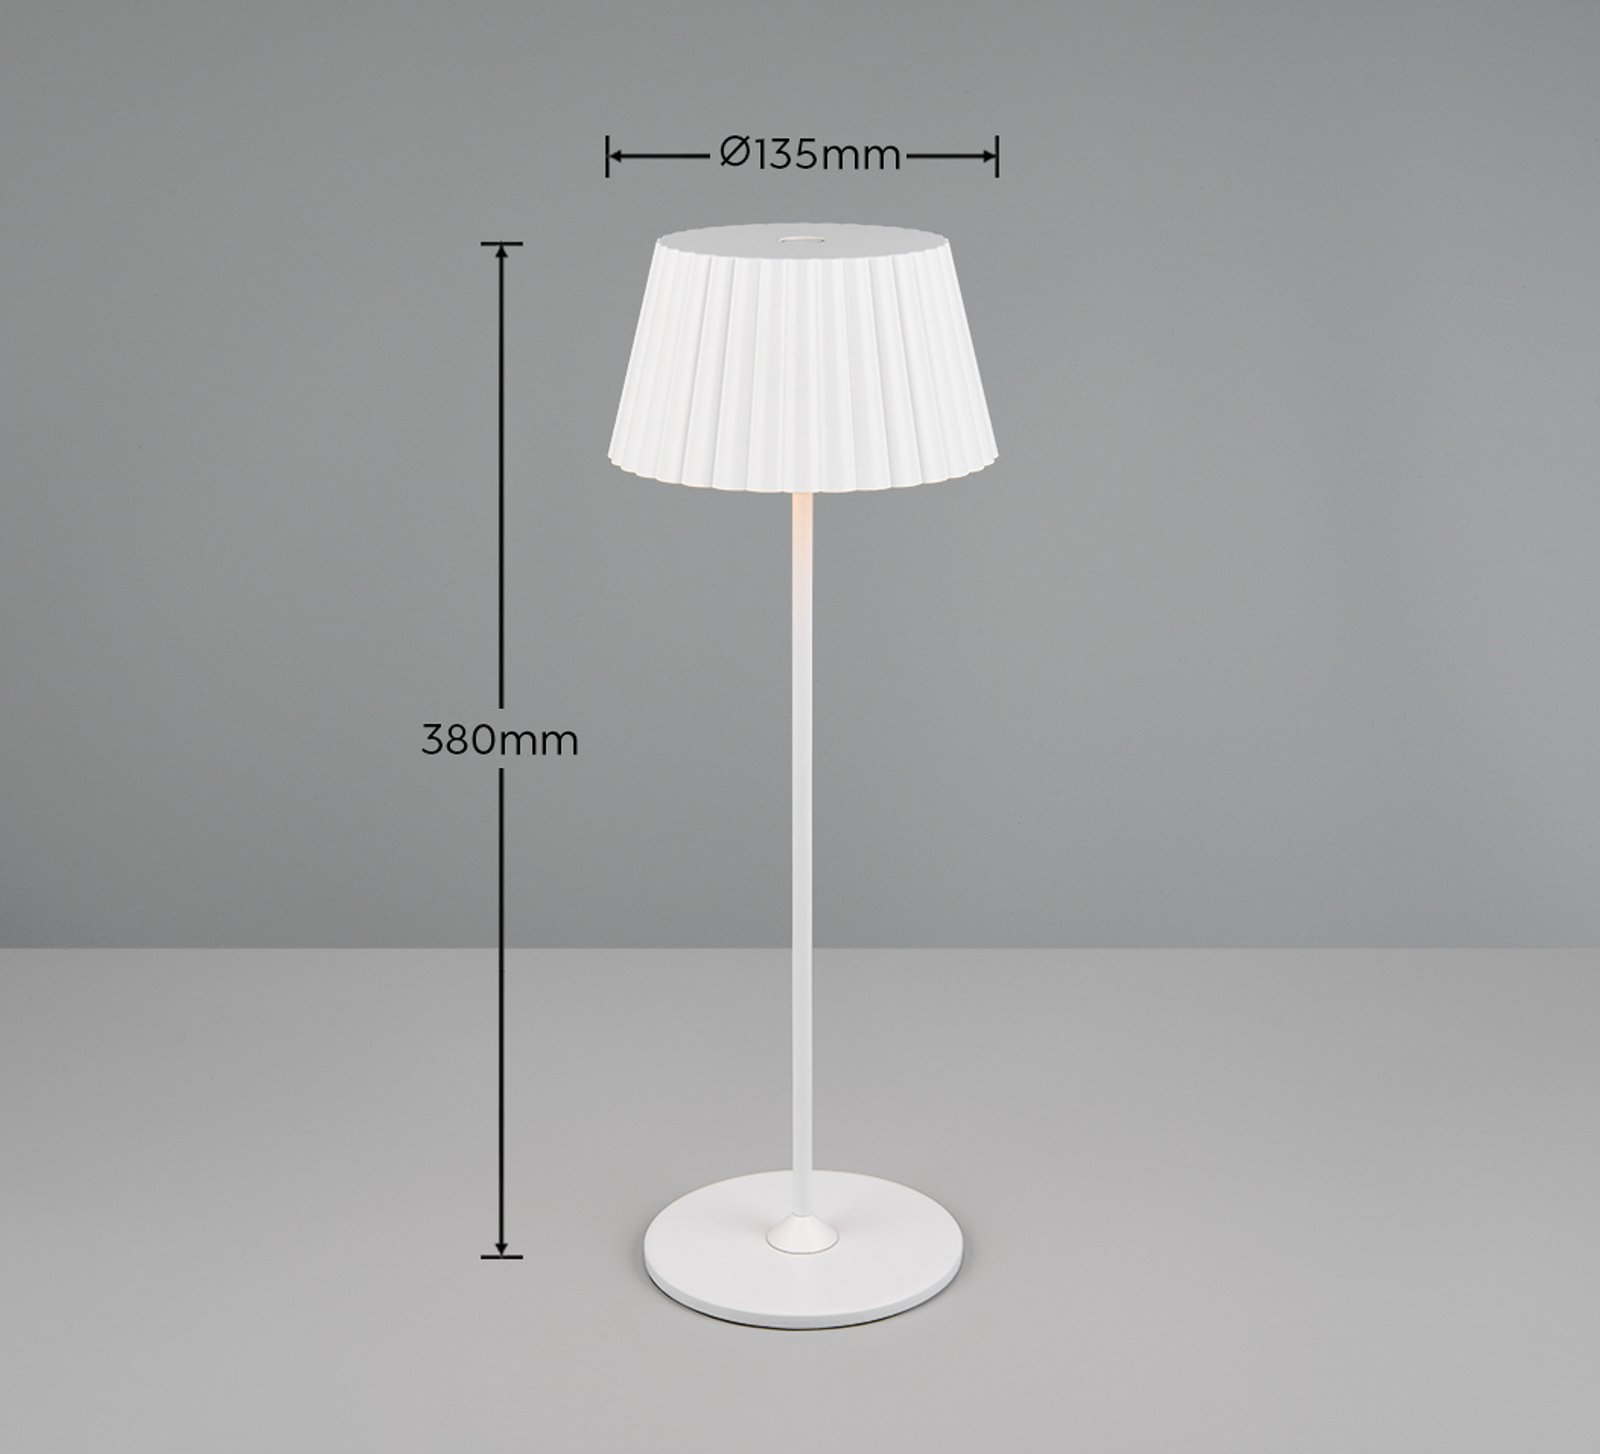 Suarez ladattava LED-pöytävalaisin, valkoinen, korkeus 39 cm, metallia